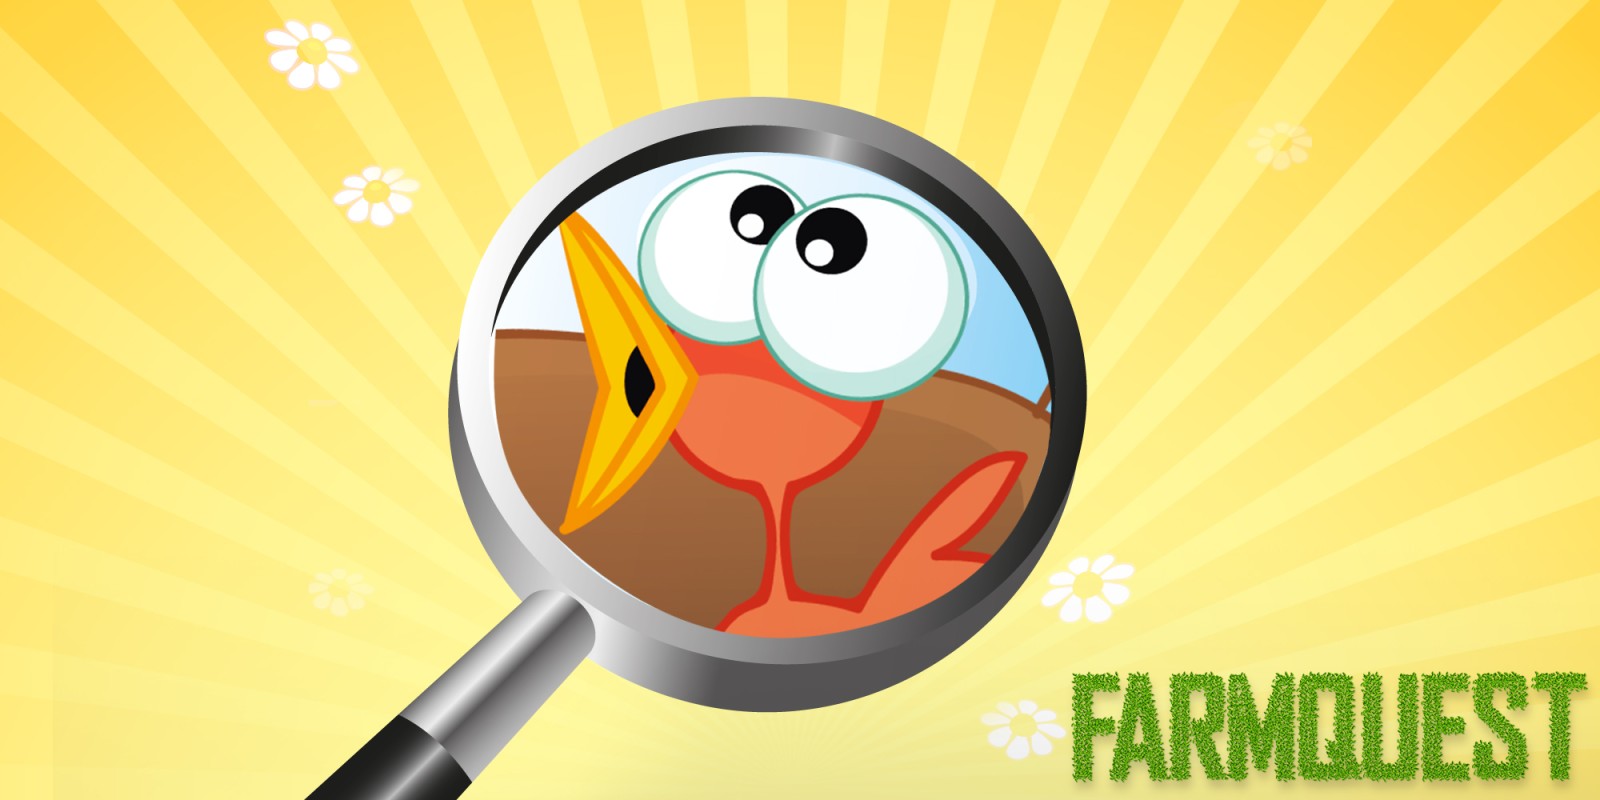 Farmquest - Das Wimmelbild-Suchspiel für Kinder